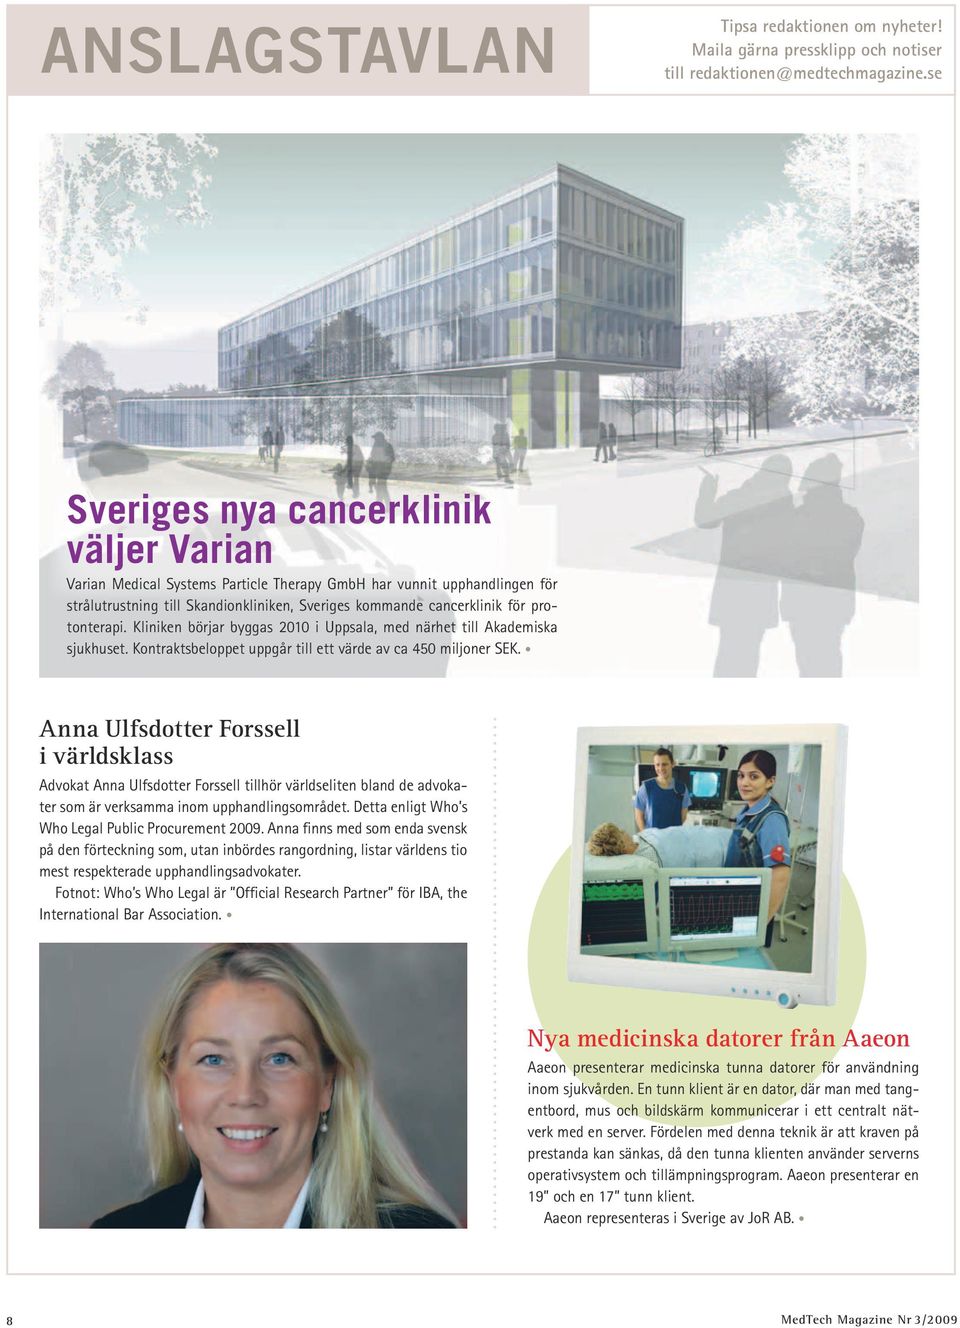 protonterapi. Kliniken börjar byggas 2010 i Uppsala, med närhet till Akademiska sjukhuset. Kontraktsbeloppet uppgår till ett värde av ca 450 miljoner SEK.